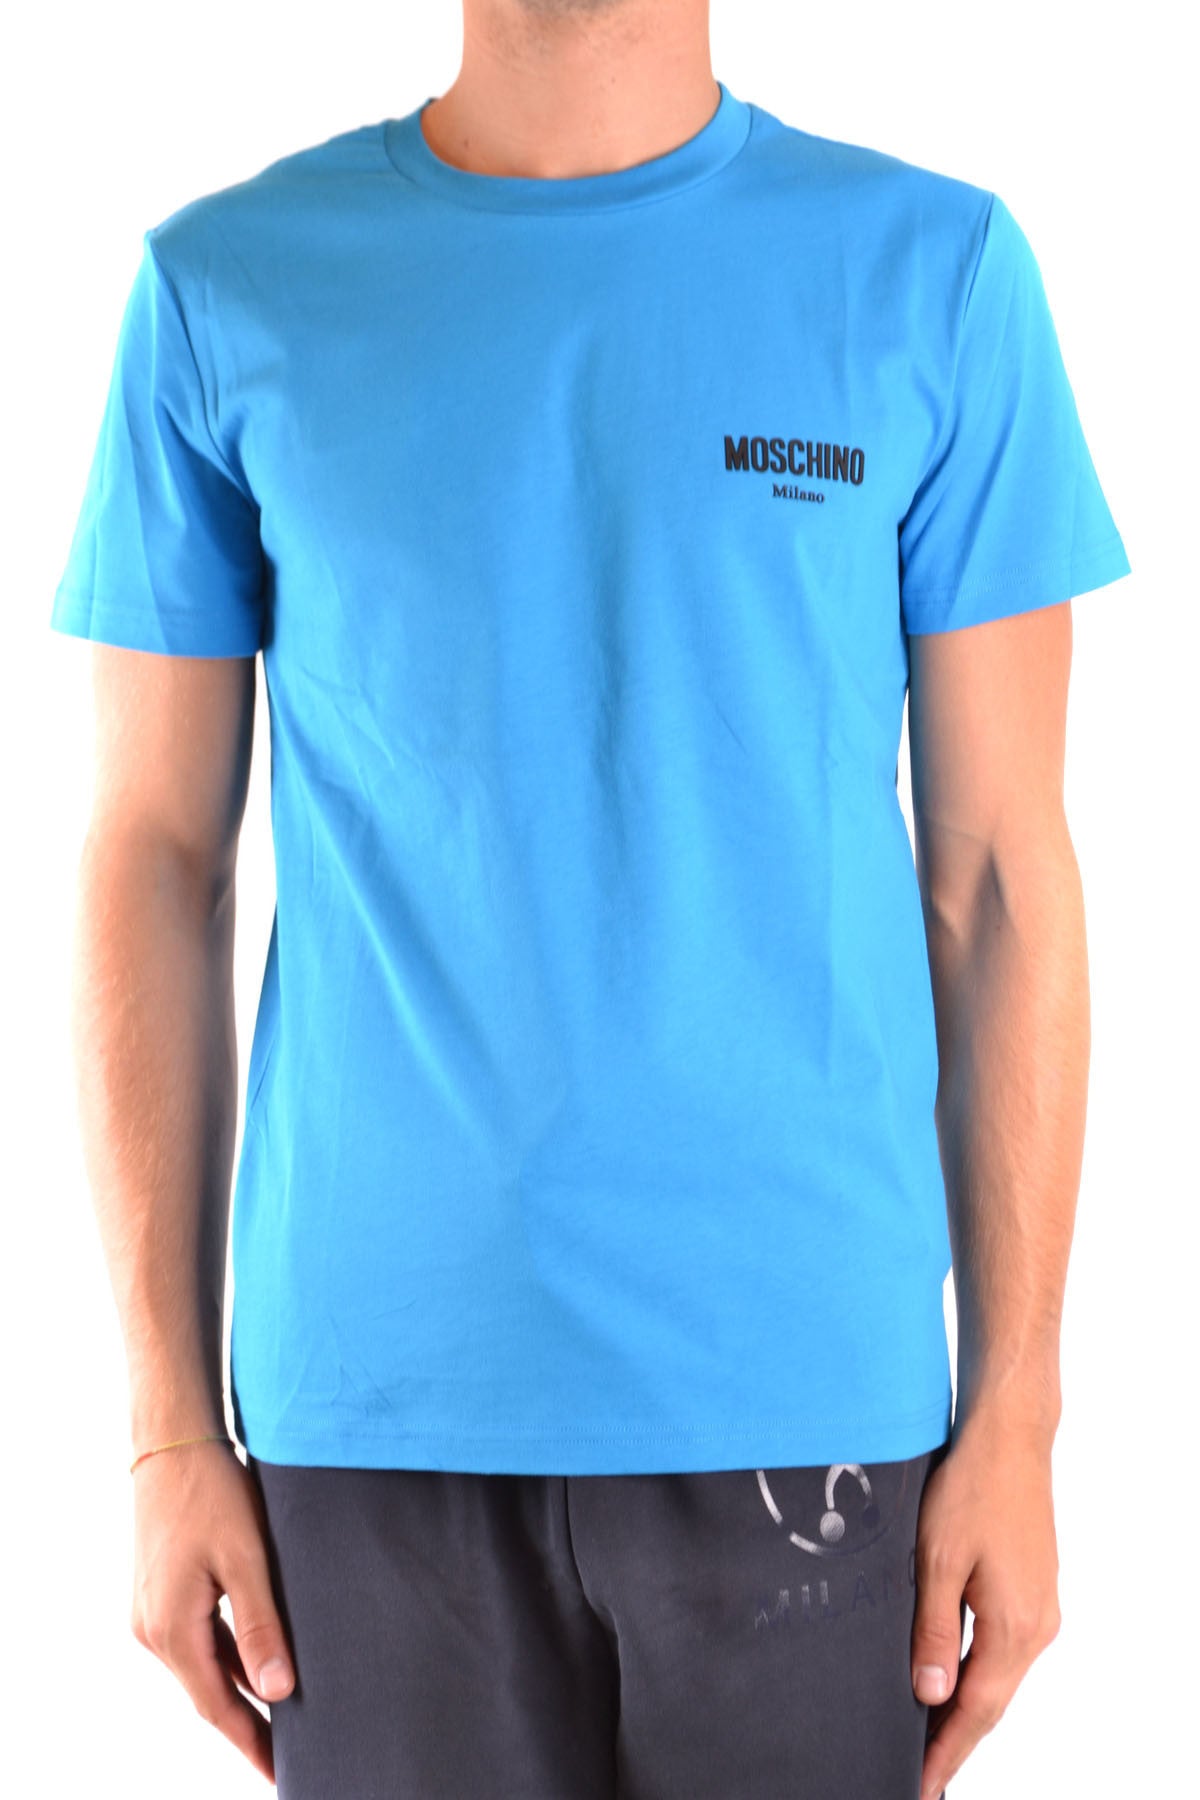 Moschino T-Shirt Uomo